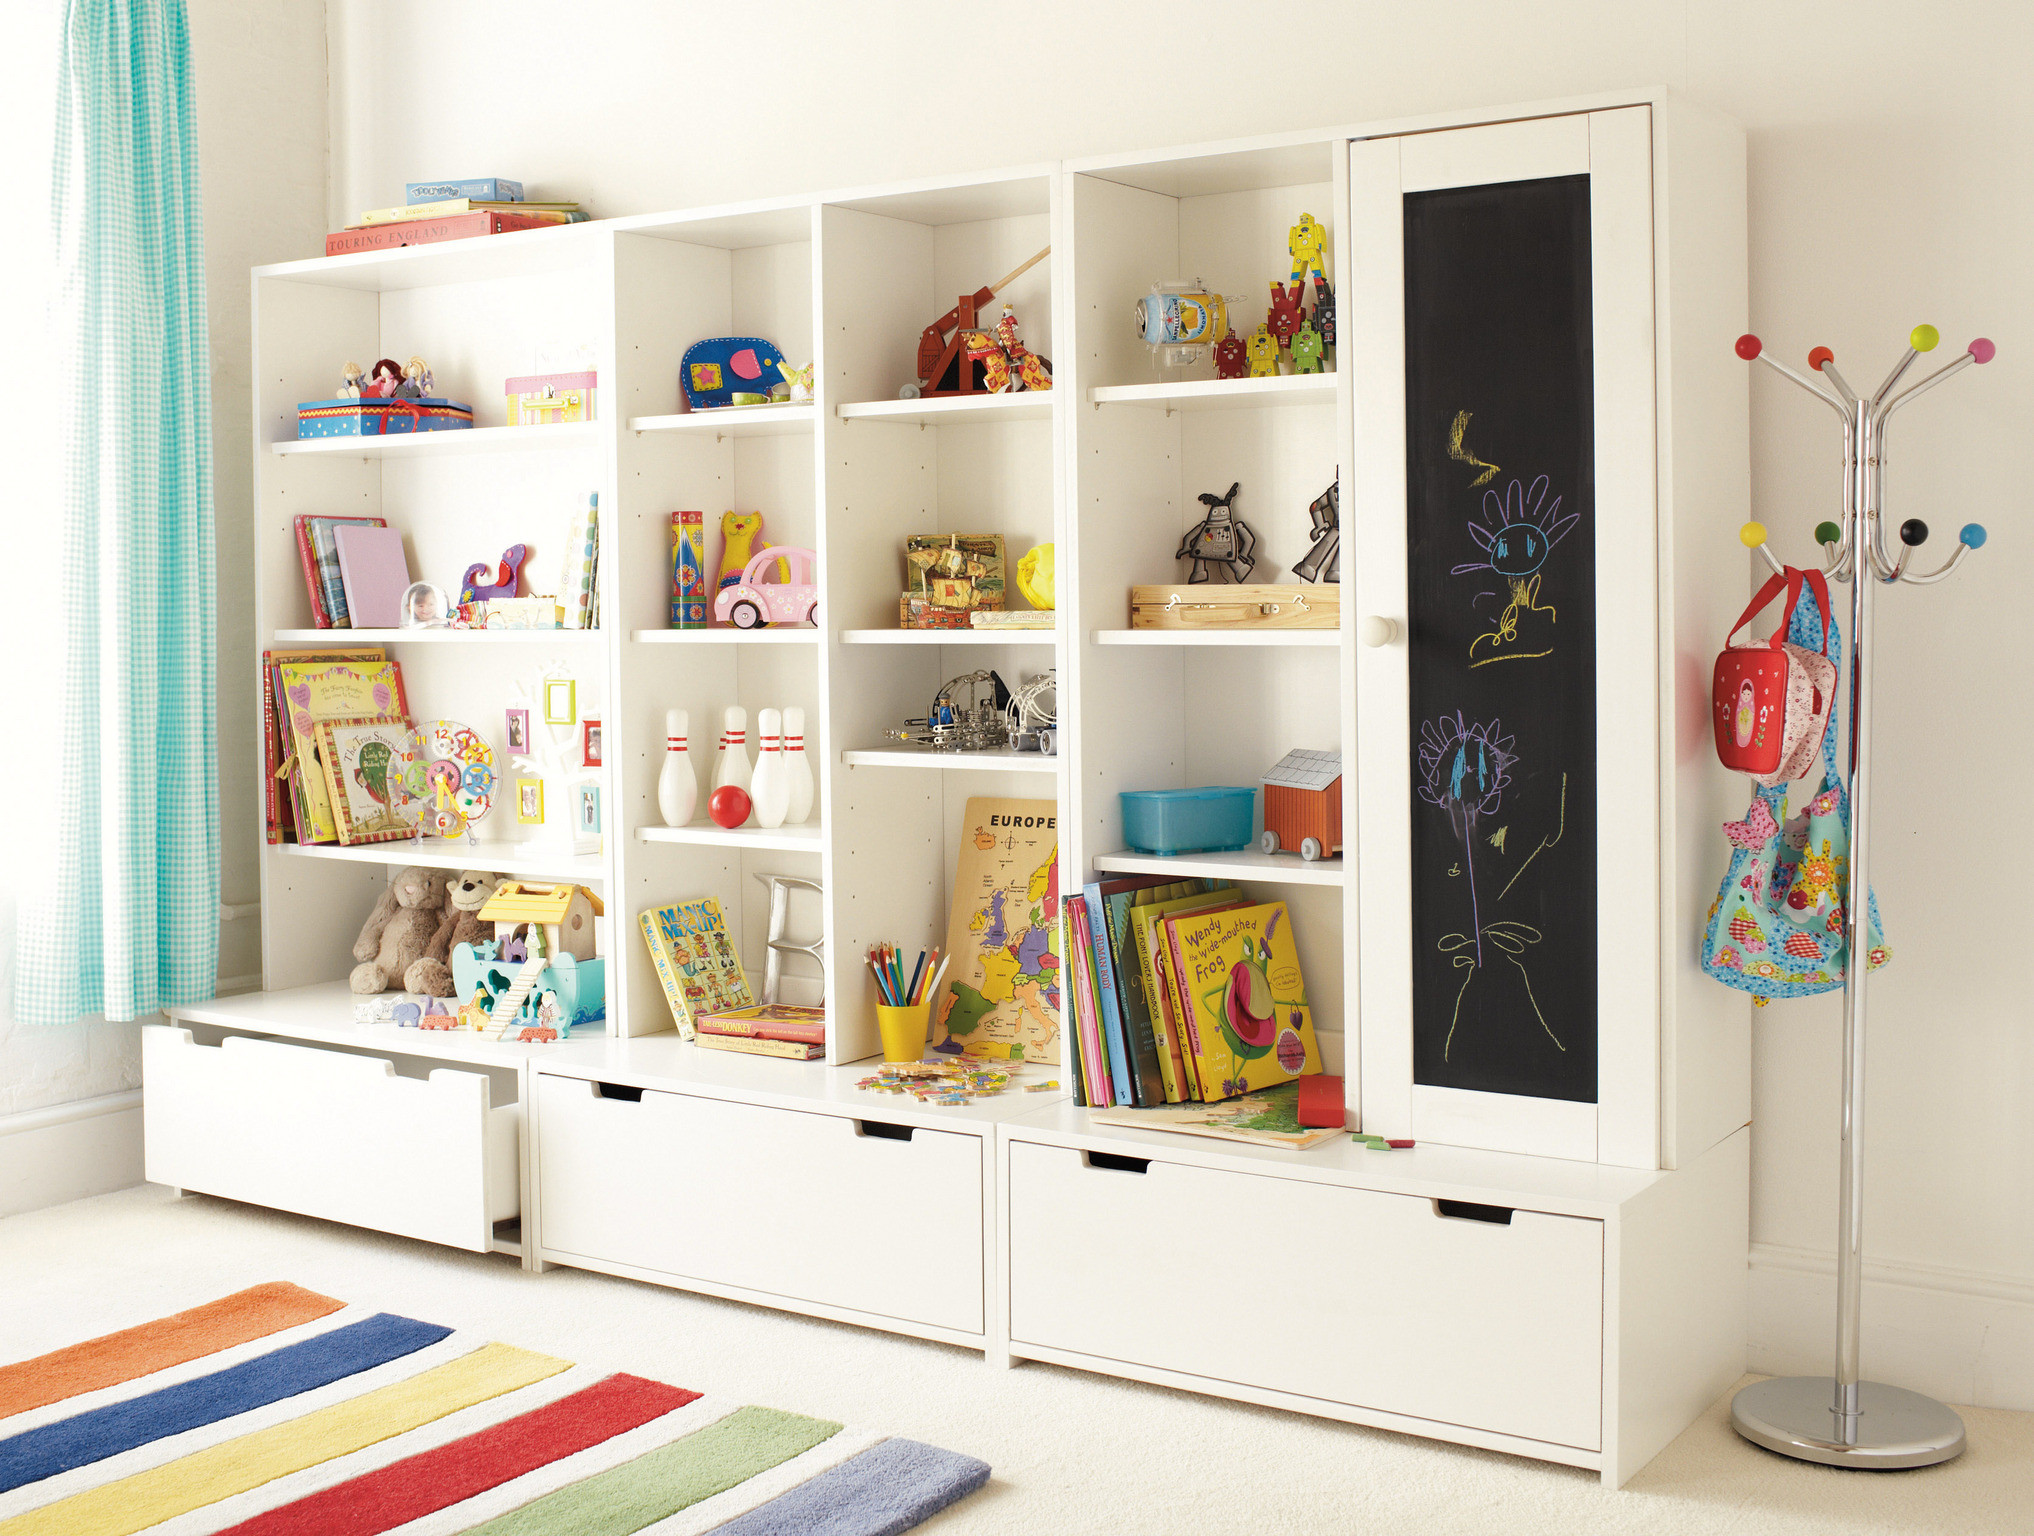 Childrens Storage Furniture
 Most Precise Children’s Playroom Storage Ideas 42 Room